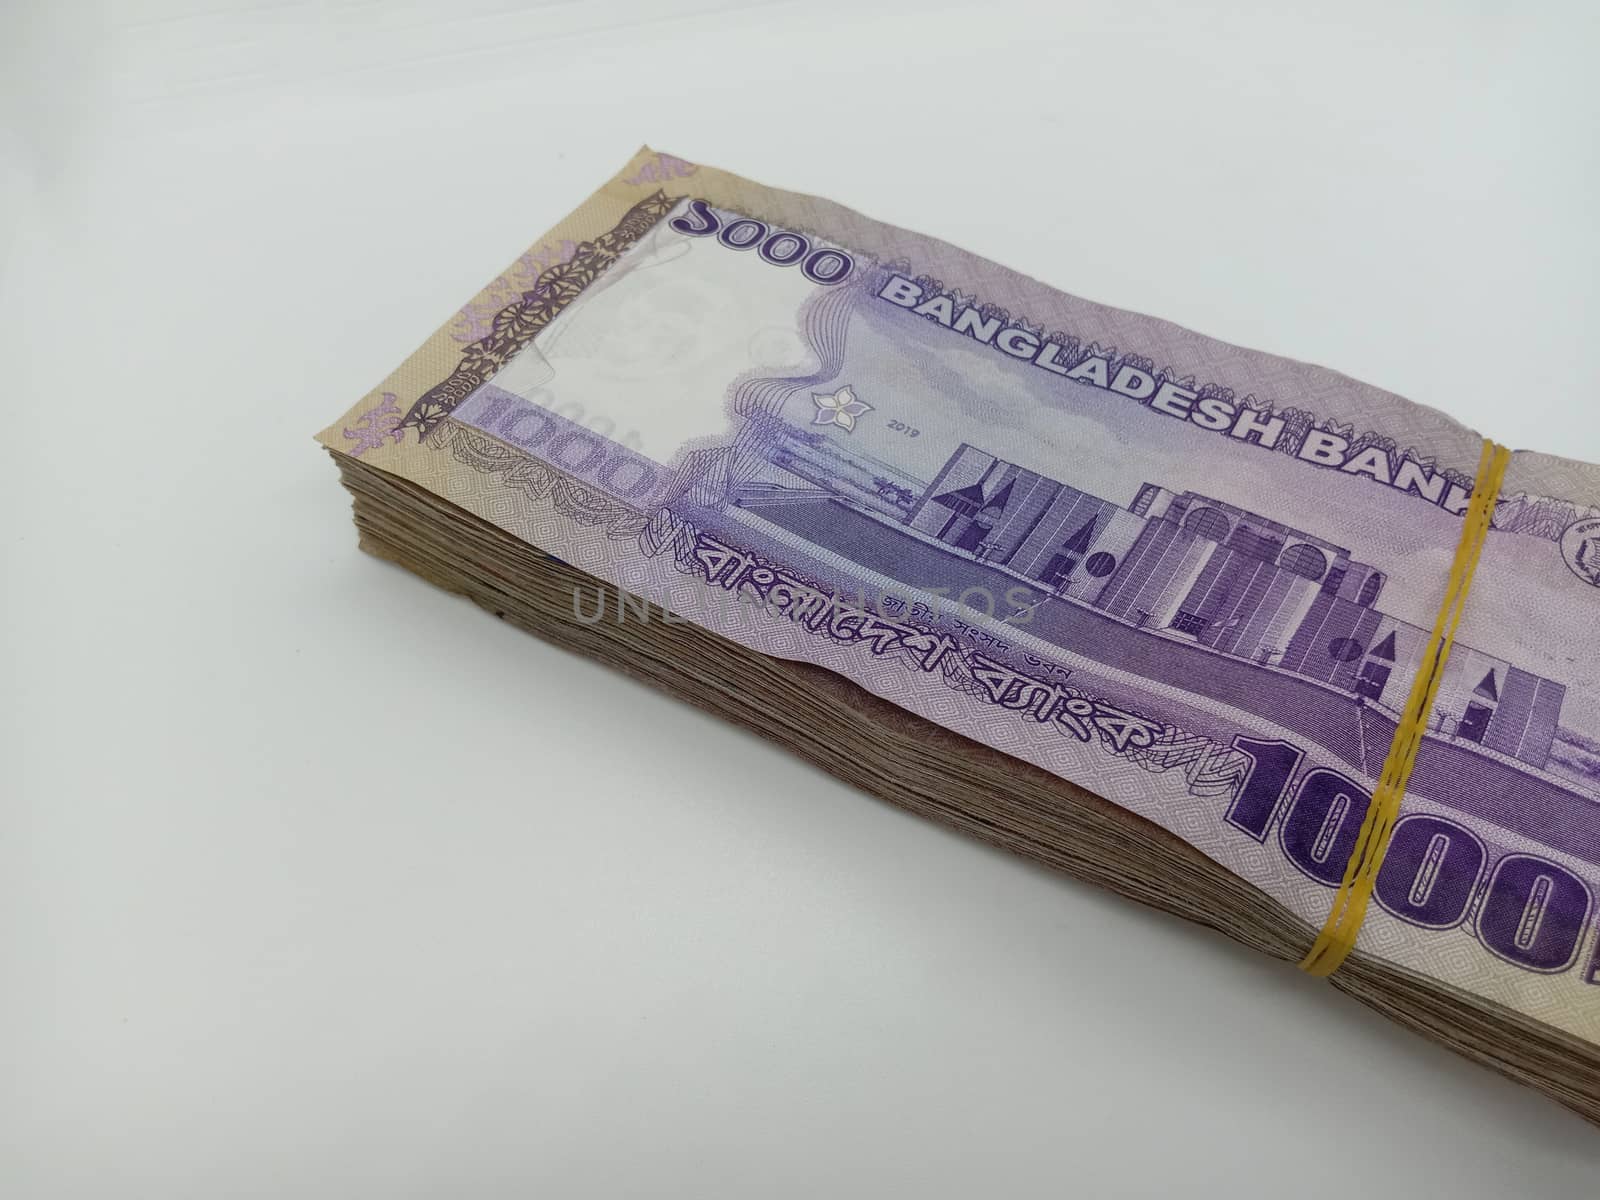 Bangladeshi bank note bundle on white background